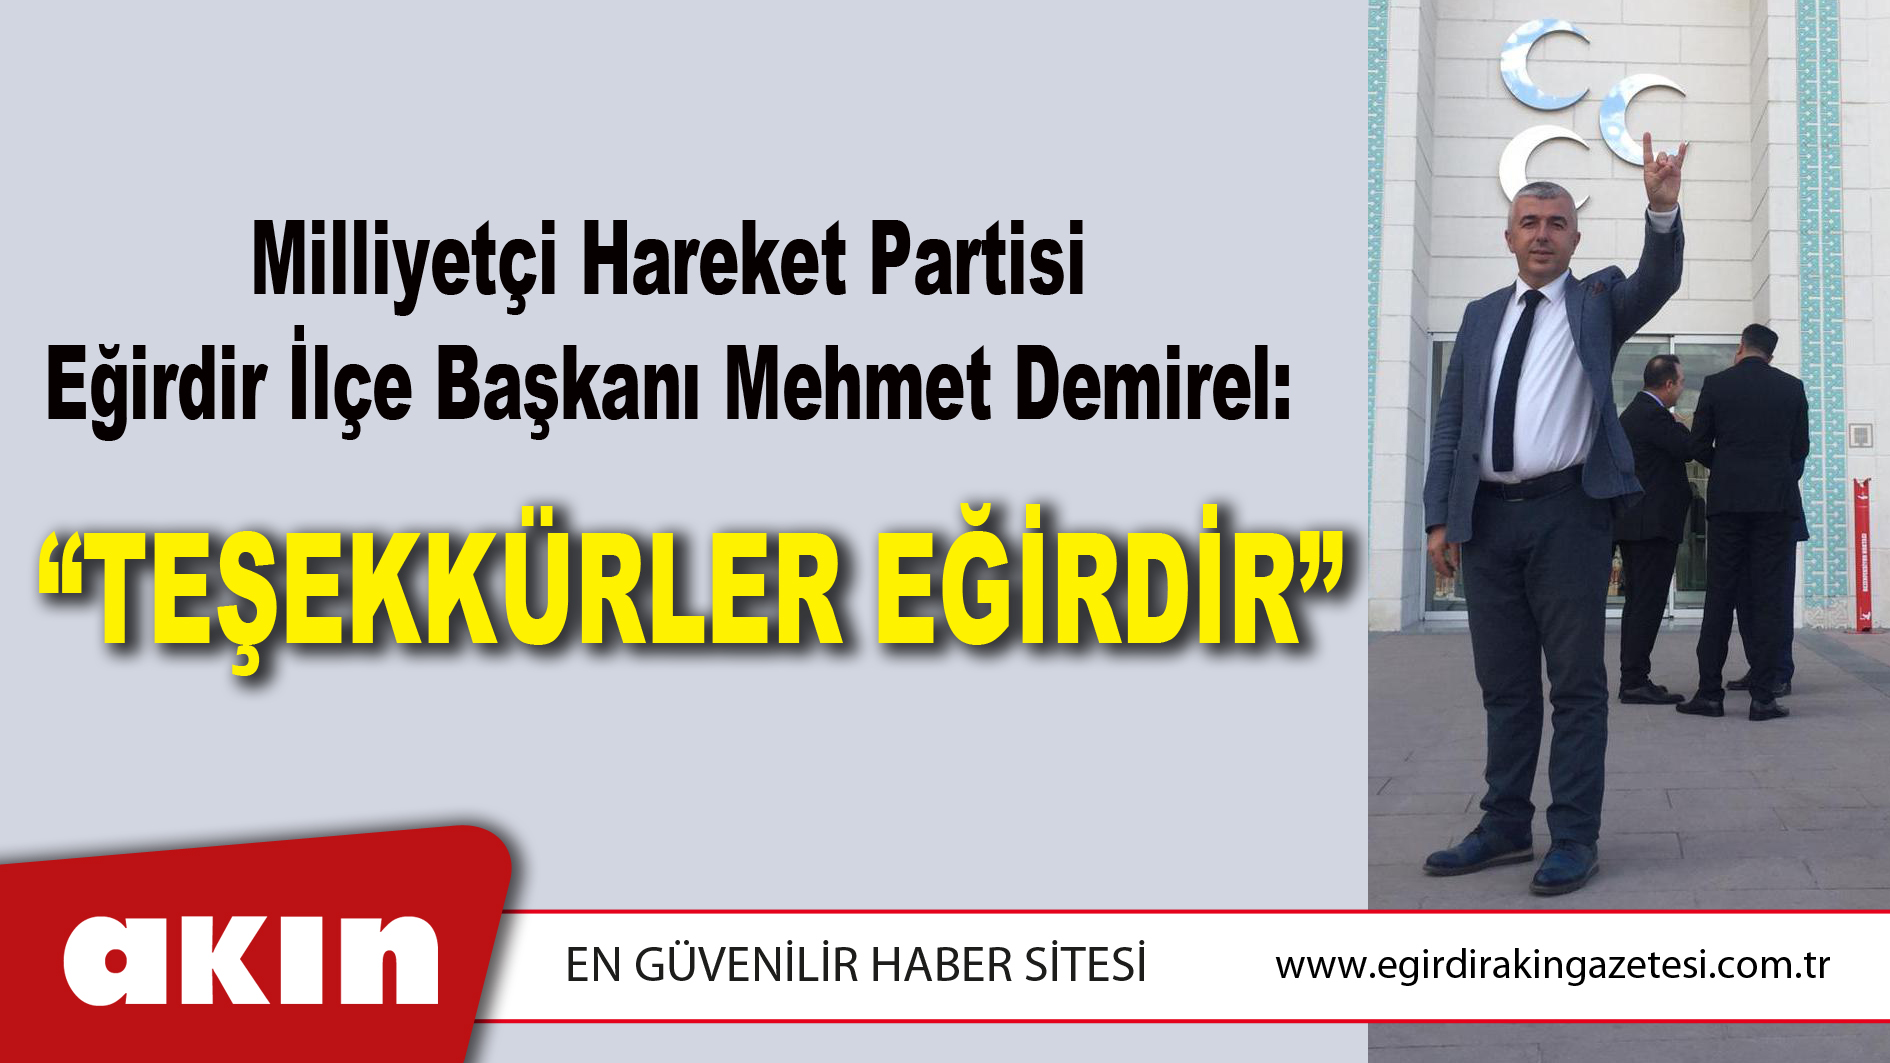 Milliyetçi Hareket Partisi Eğirdir İlçe Başkanı Mehmet Demirel: “TEŞEKKÜRLER EĞİRDİR”